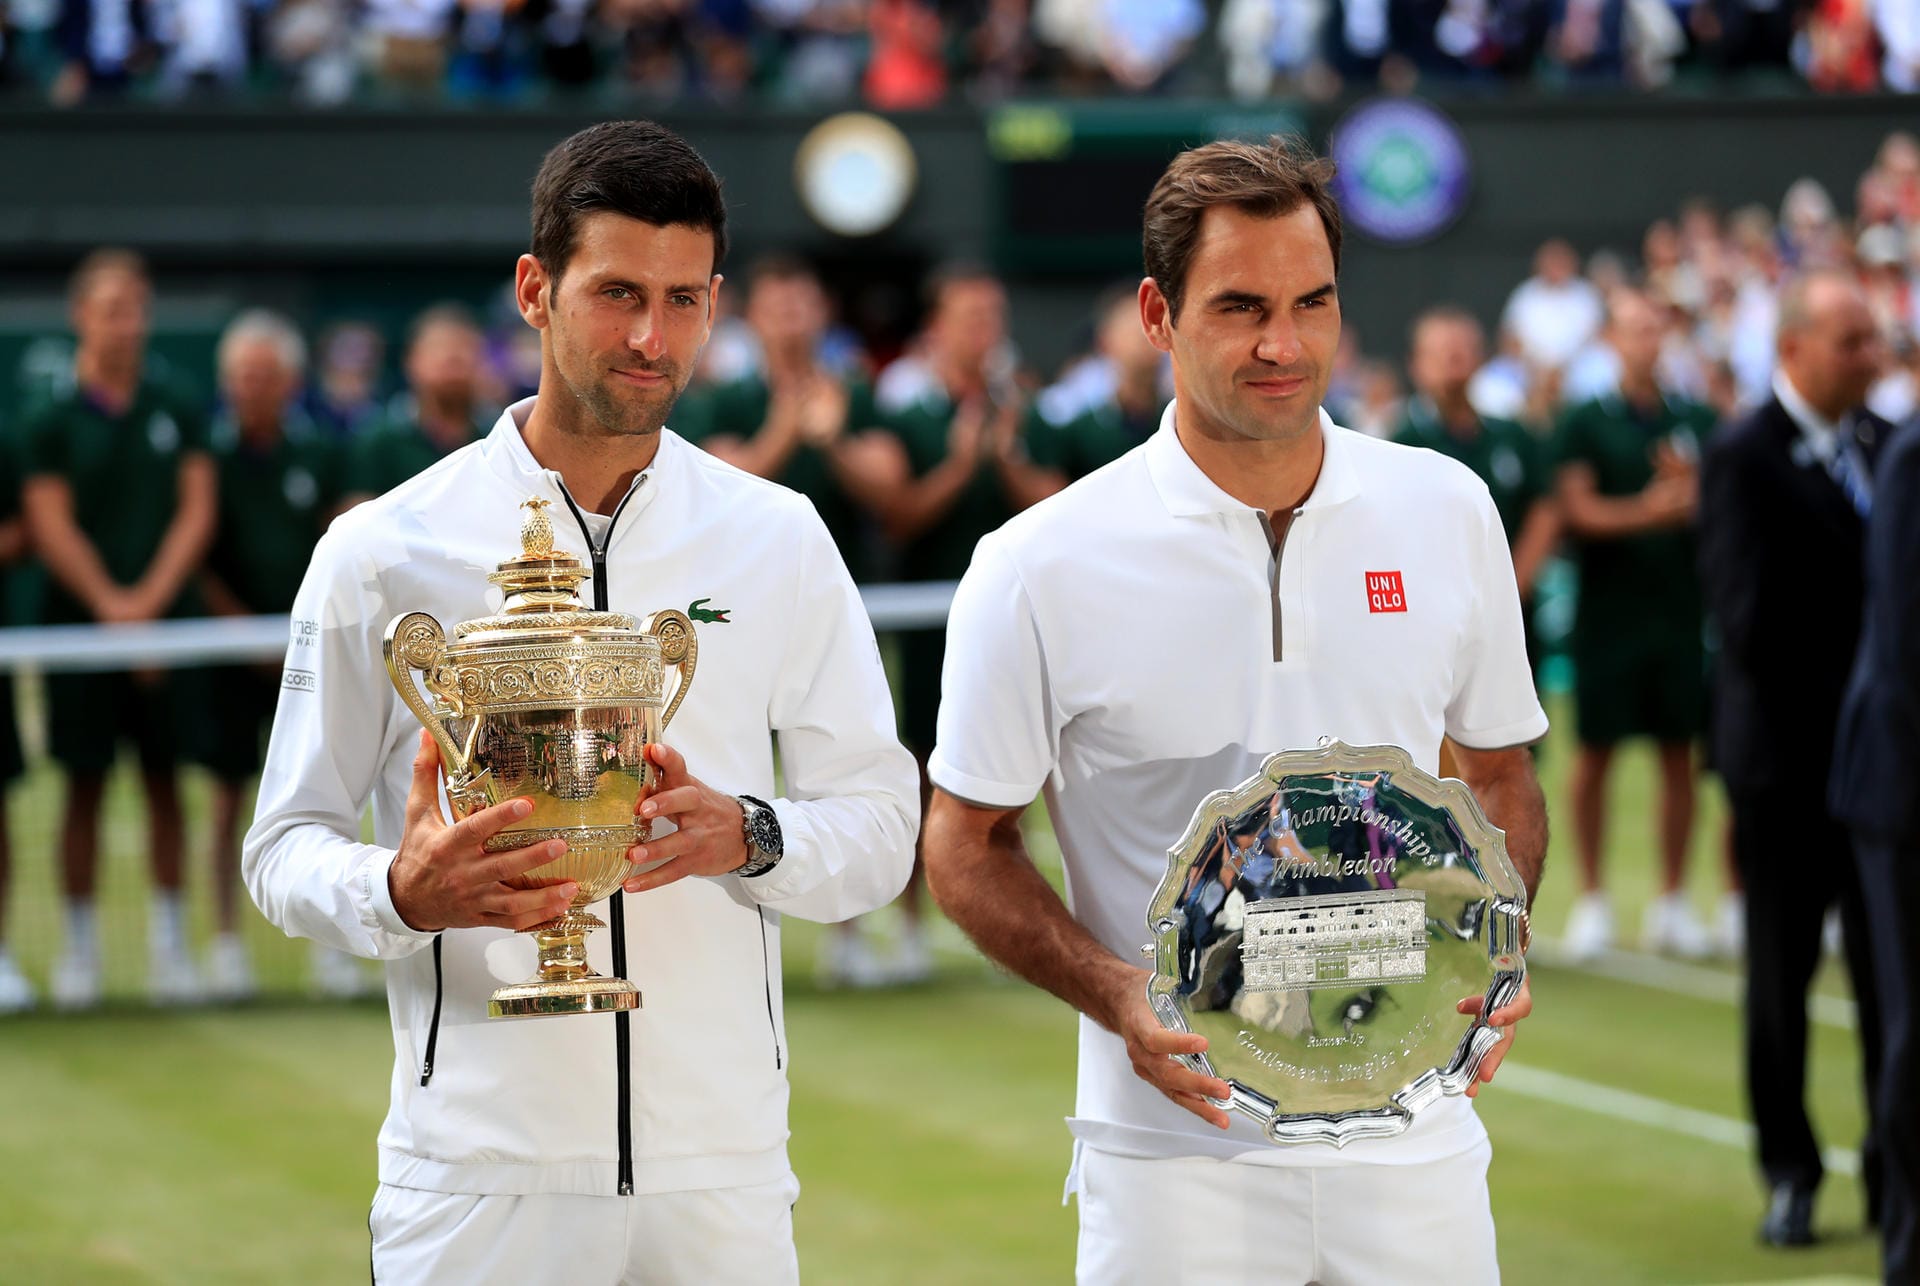 Auch insgesamt konnte Djokovic durch den Erfolg zu Federer aufschließen. Durch seinen fünften Sieg in Wimbledon hat der "Djoker" nun 16 Grand-Slam-Titel auf dem Konto – Federer steht bei 20.